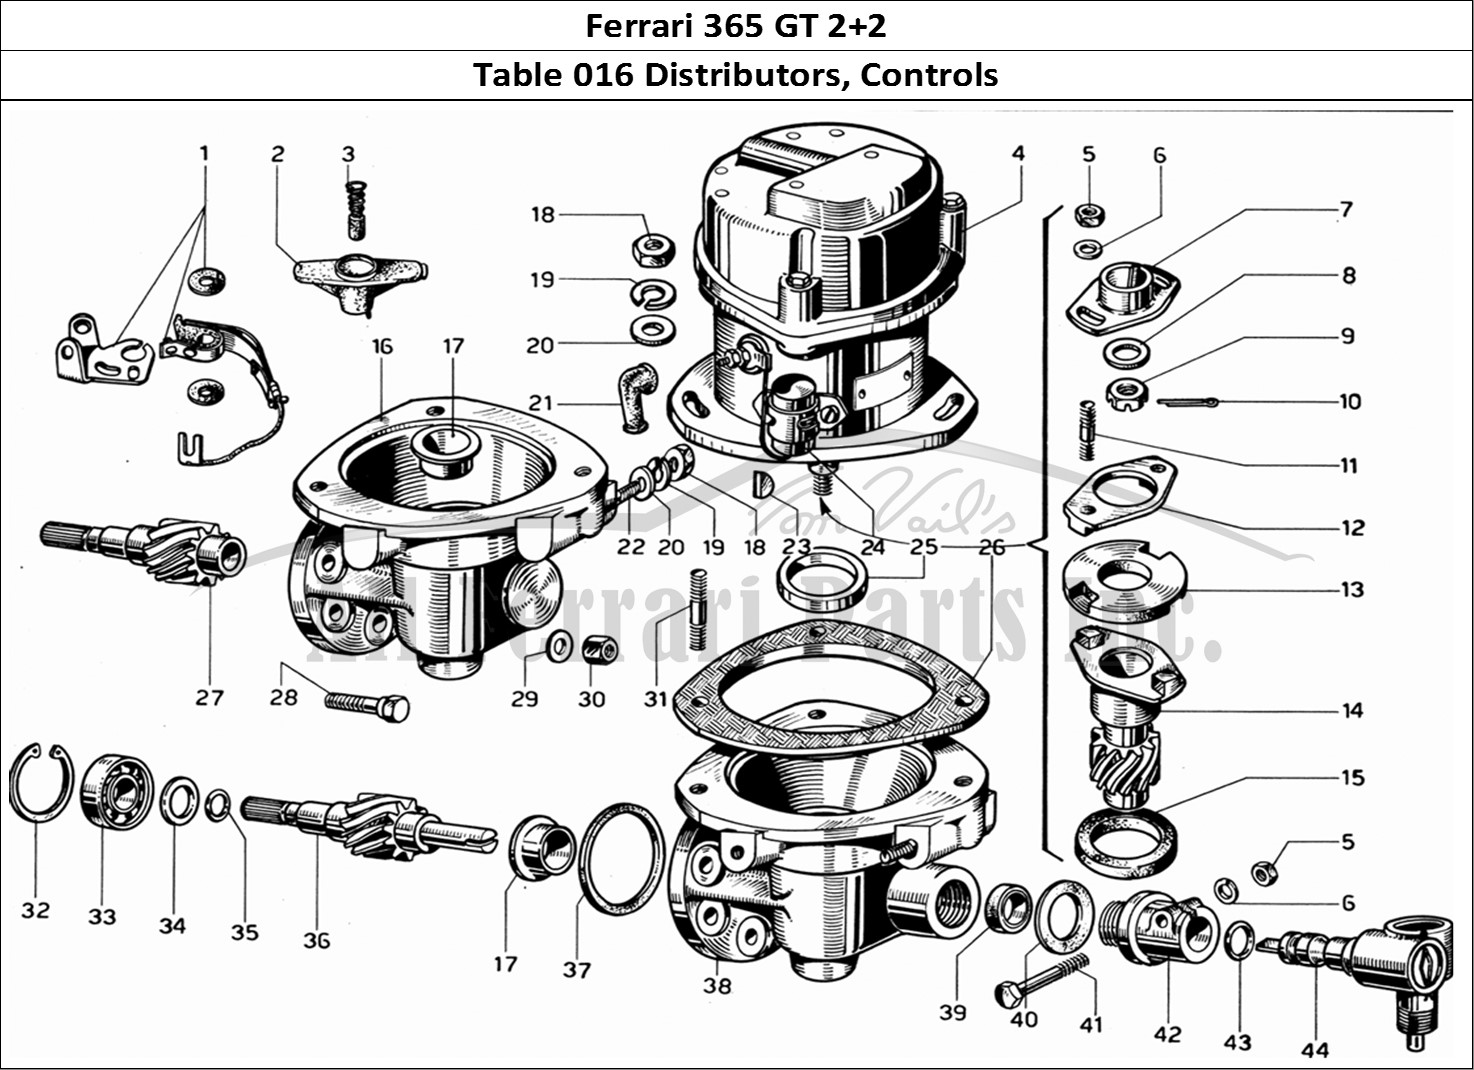 Ferrari Parts Ferrari 365 GT 2+2 (Mechanical) Page 016 Distributors and Controls